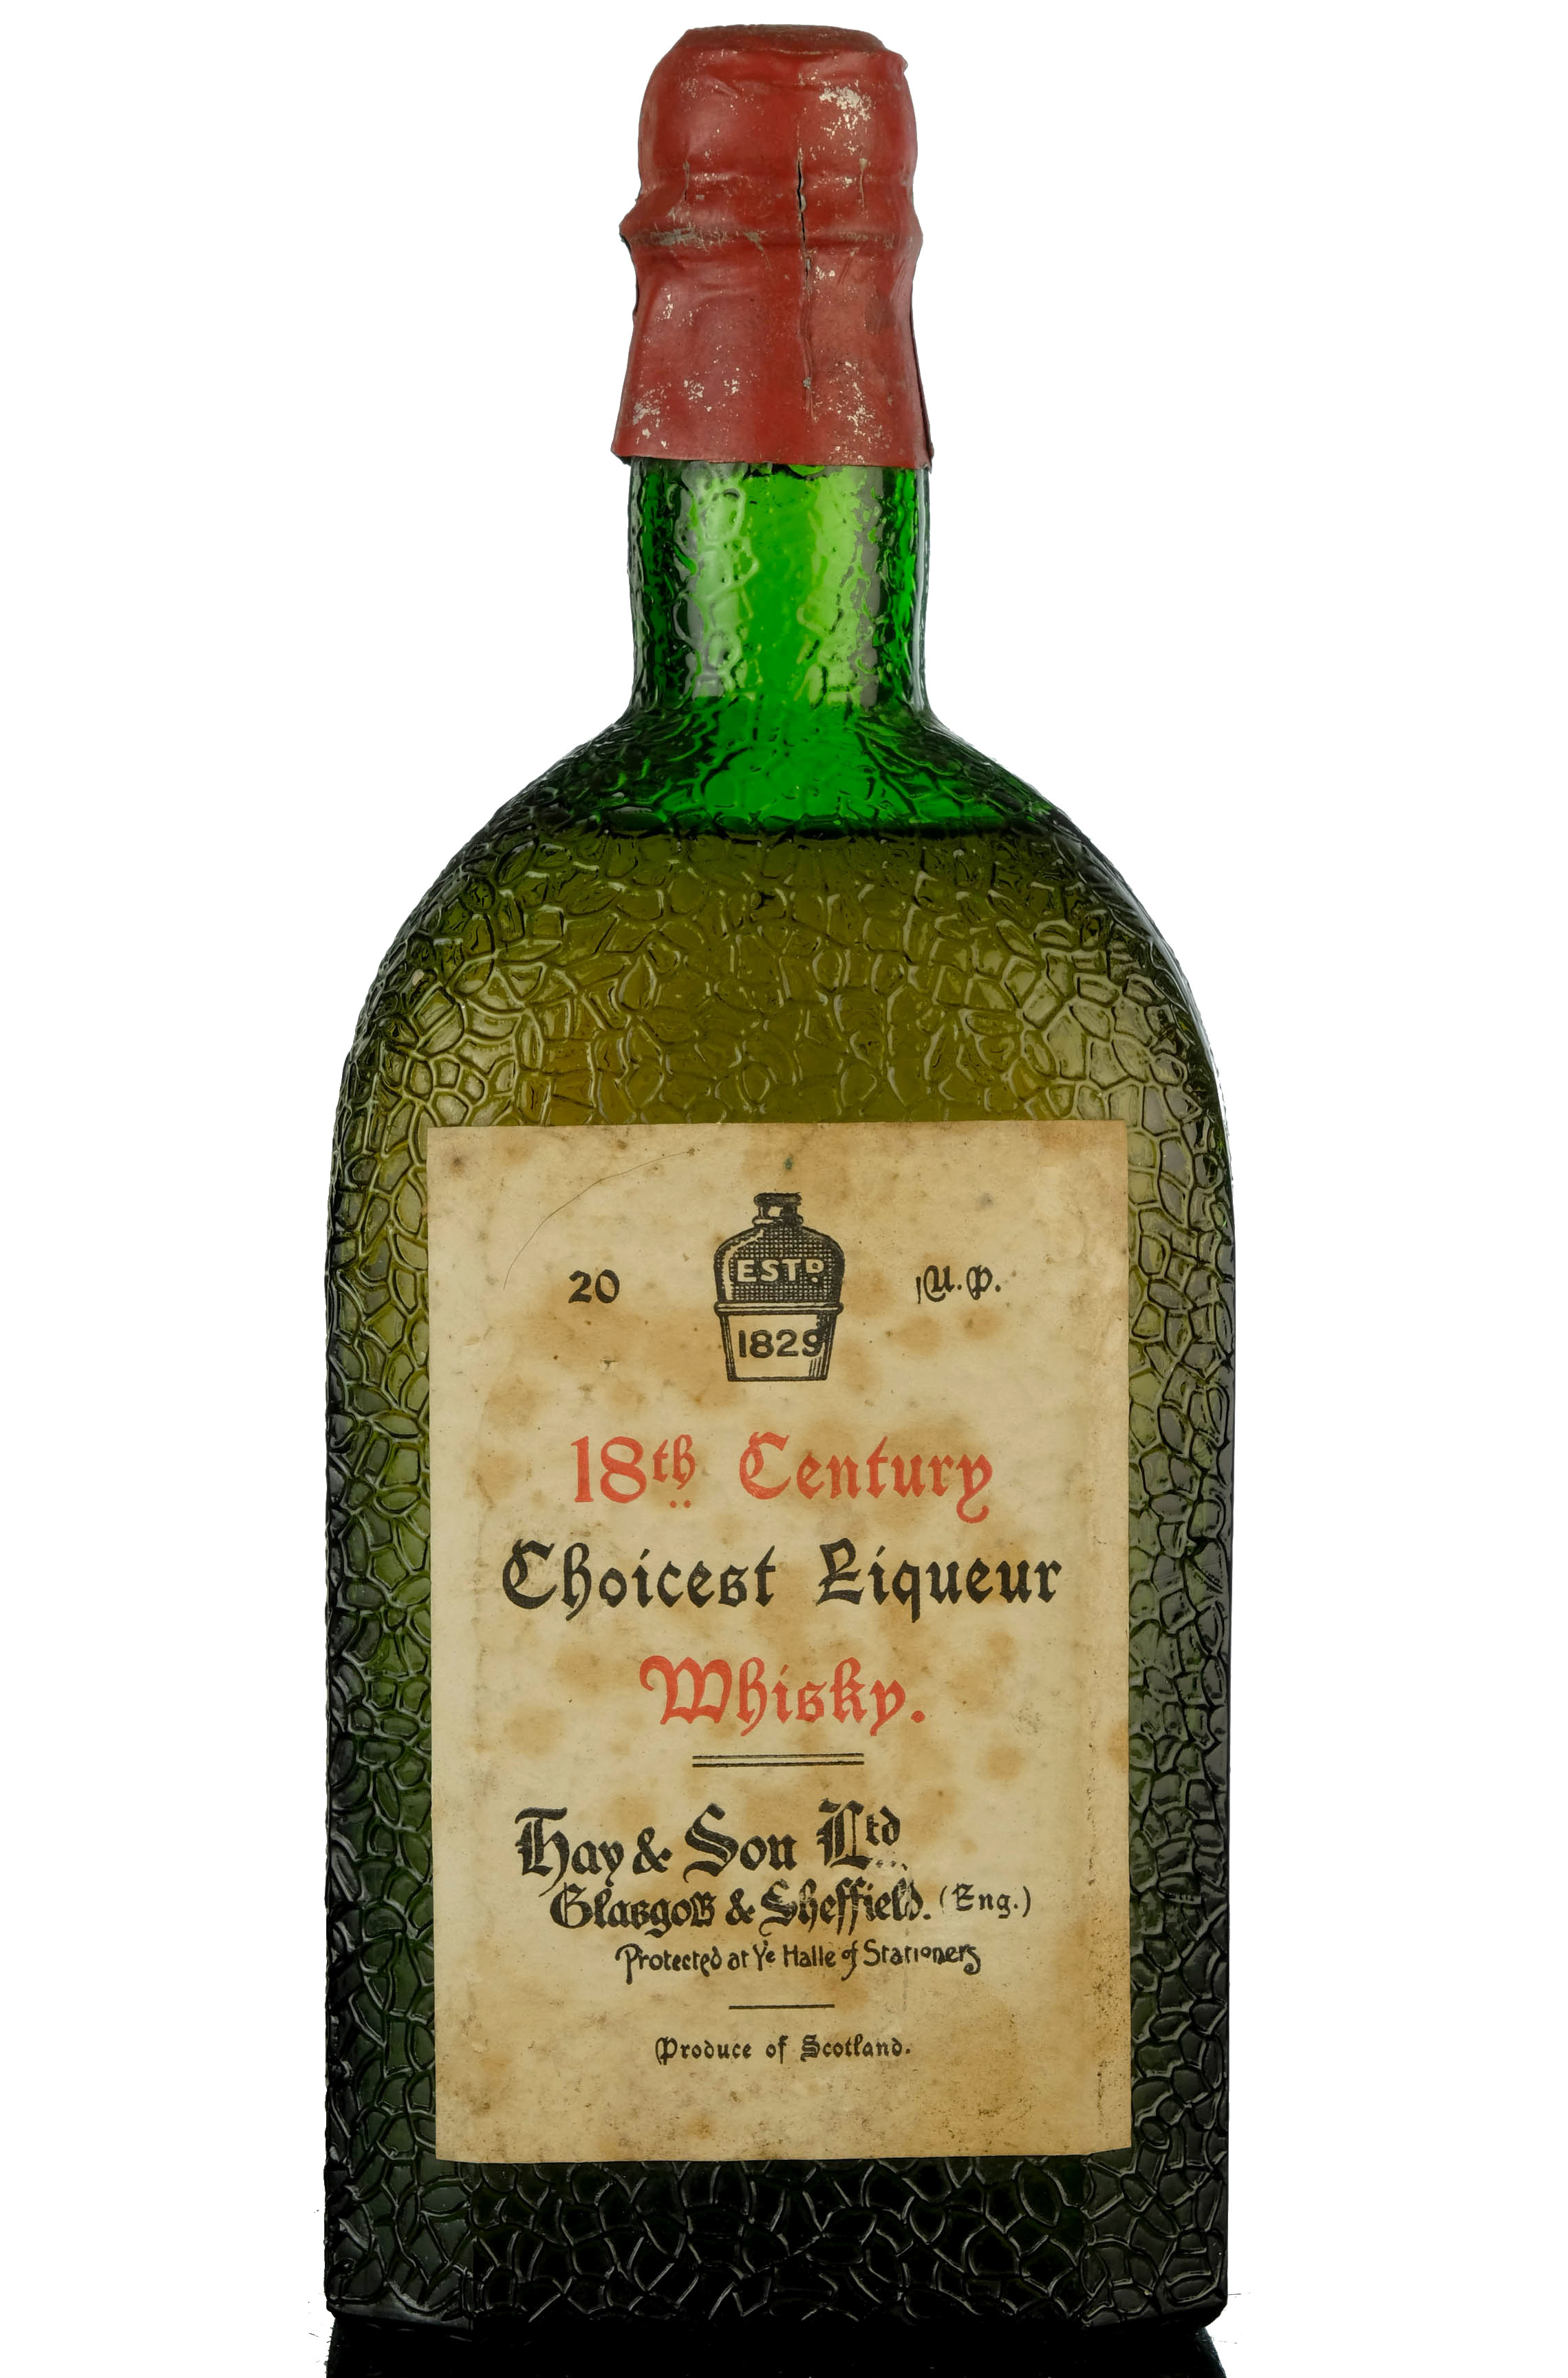 Choicest Liqueur - 18th Century Whisky